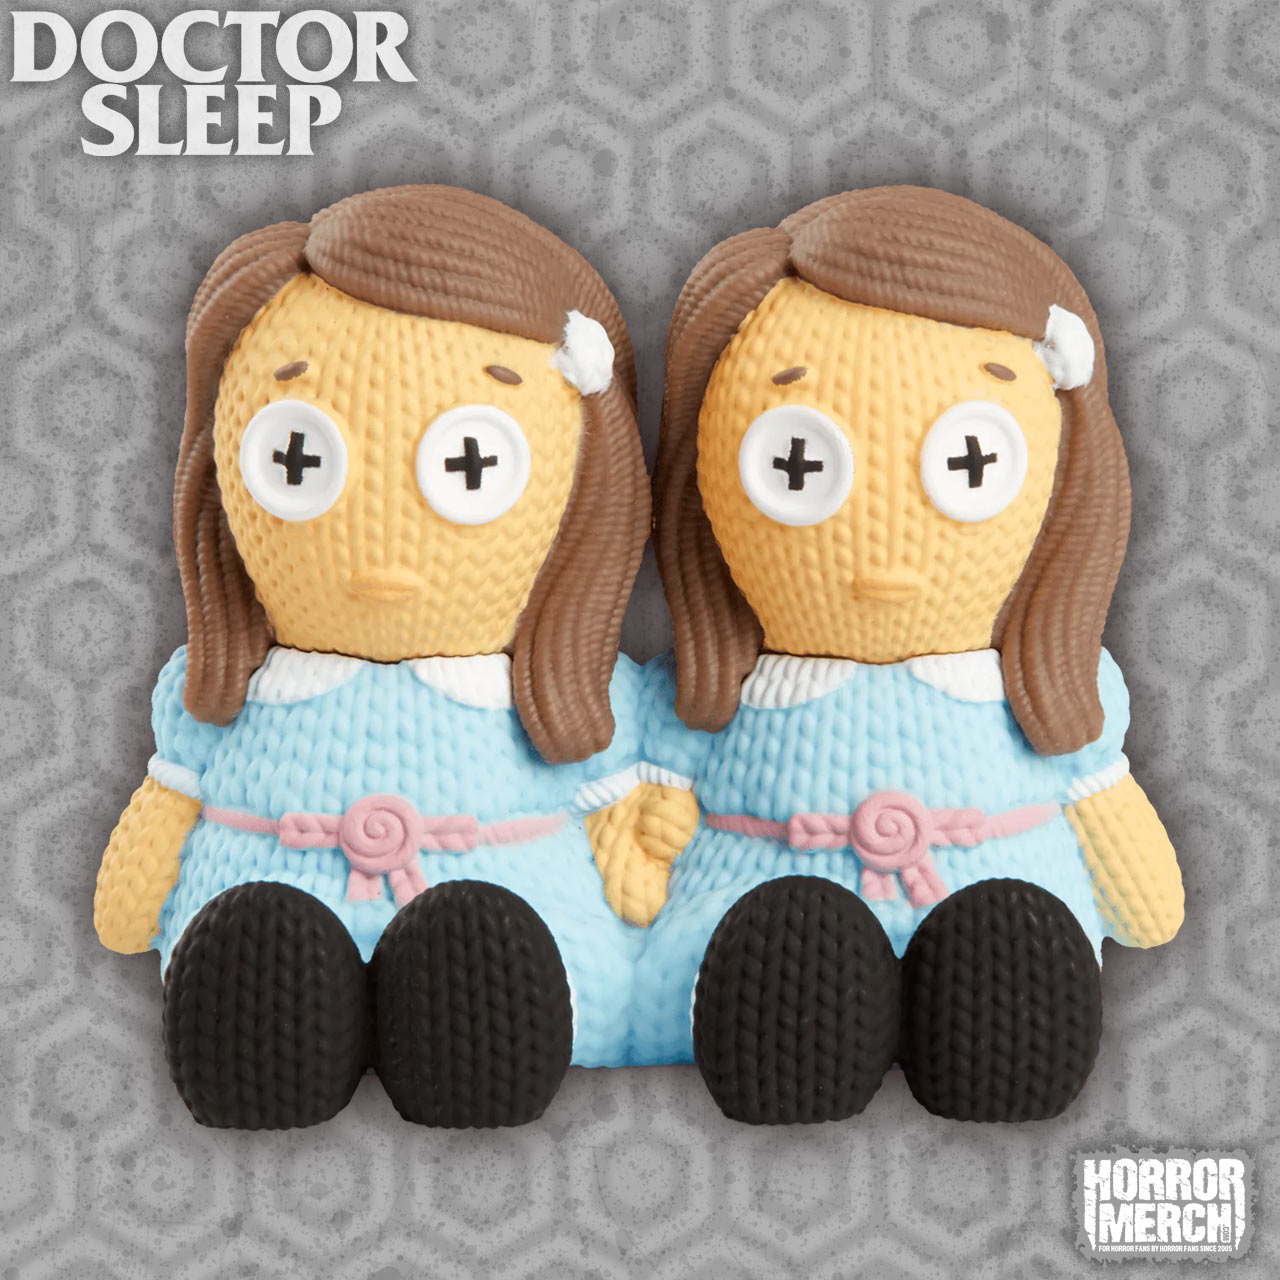 Doctor Sleep - Twins Knit Style Figures [Figure]